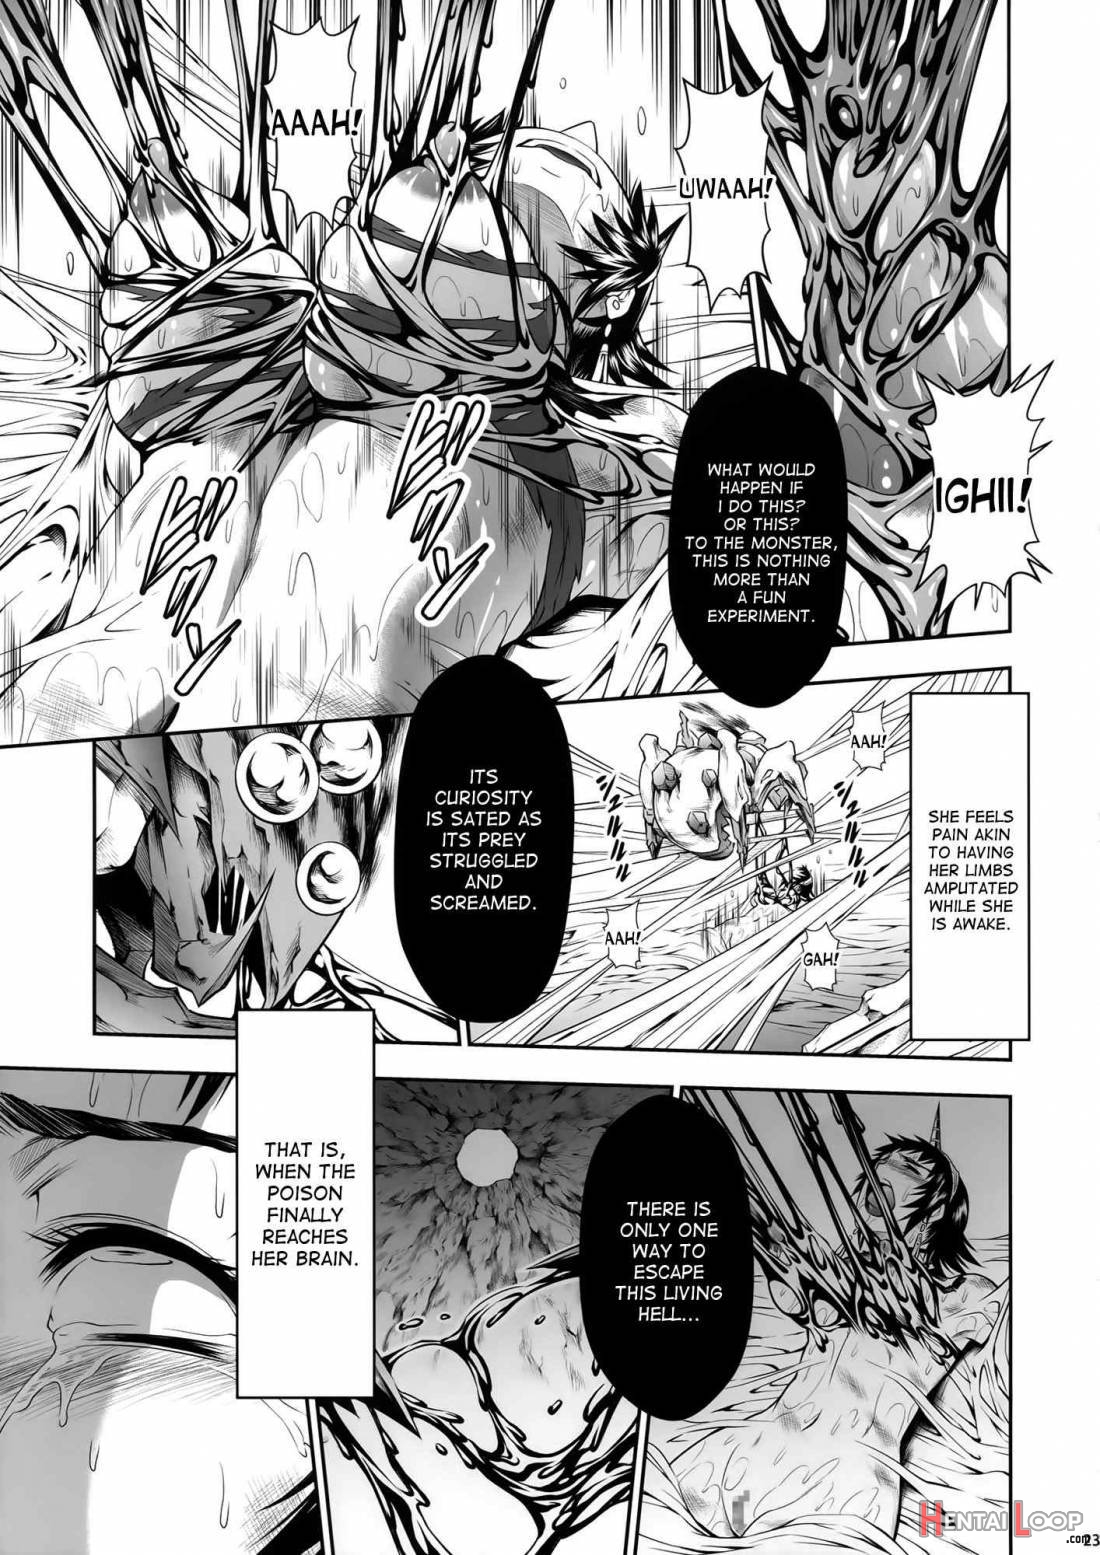 Pair Hunter no Seitai Vol. 2-2 page 20